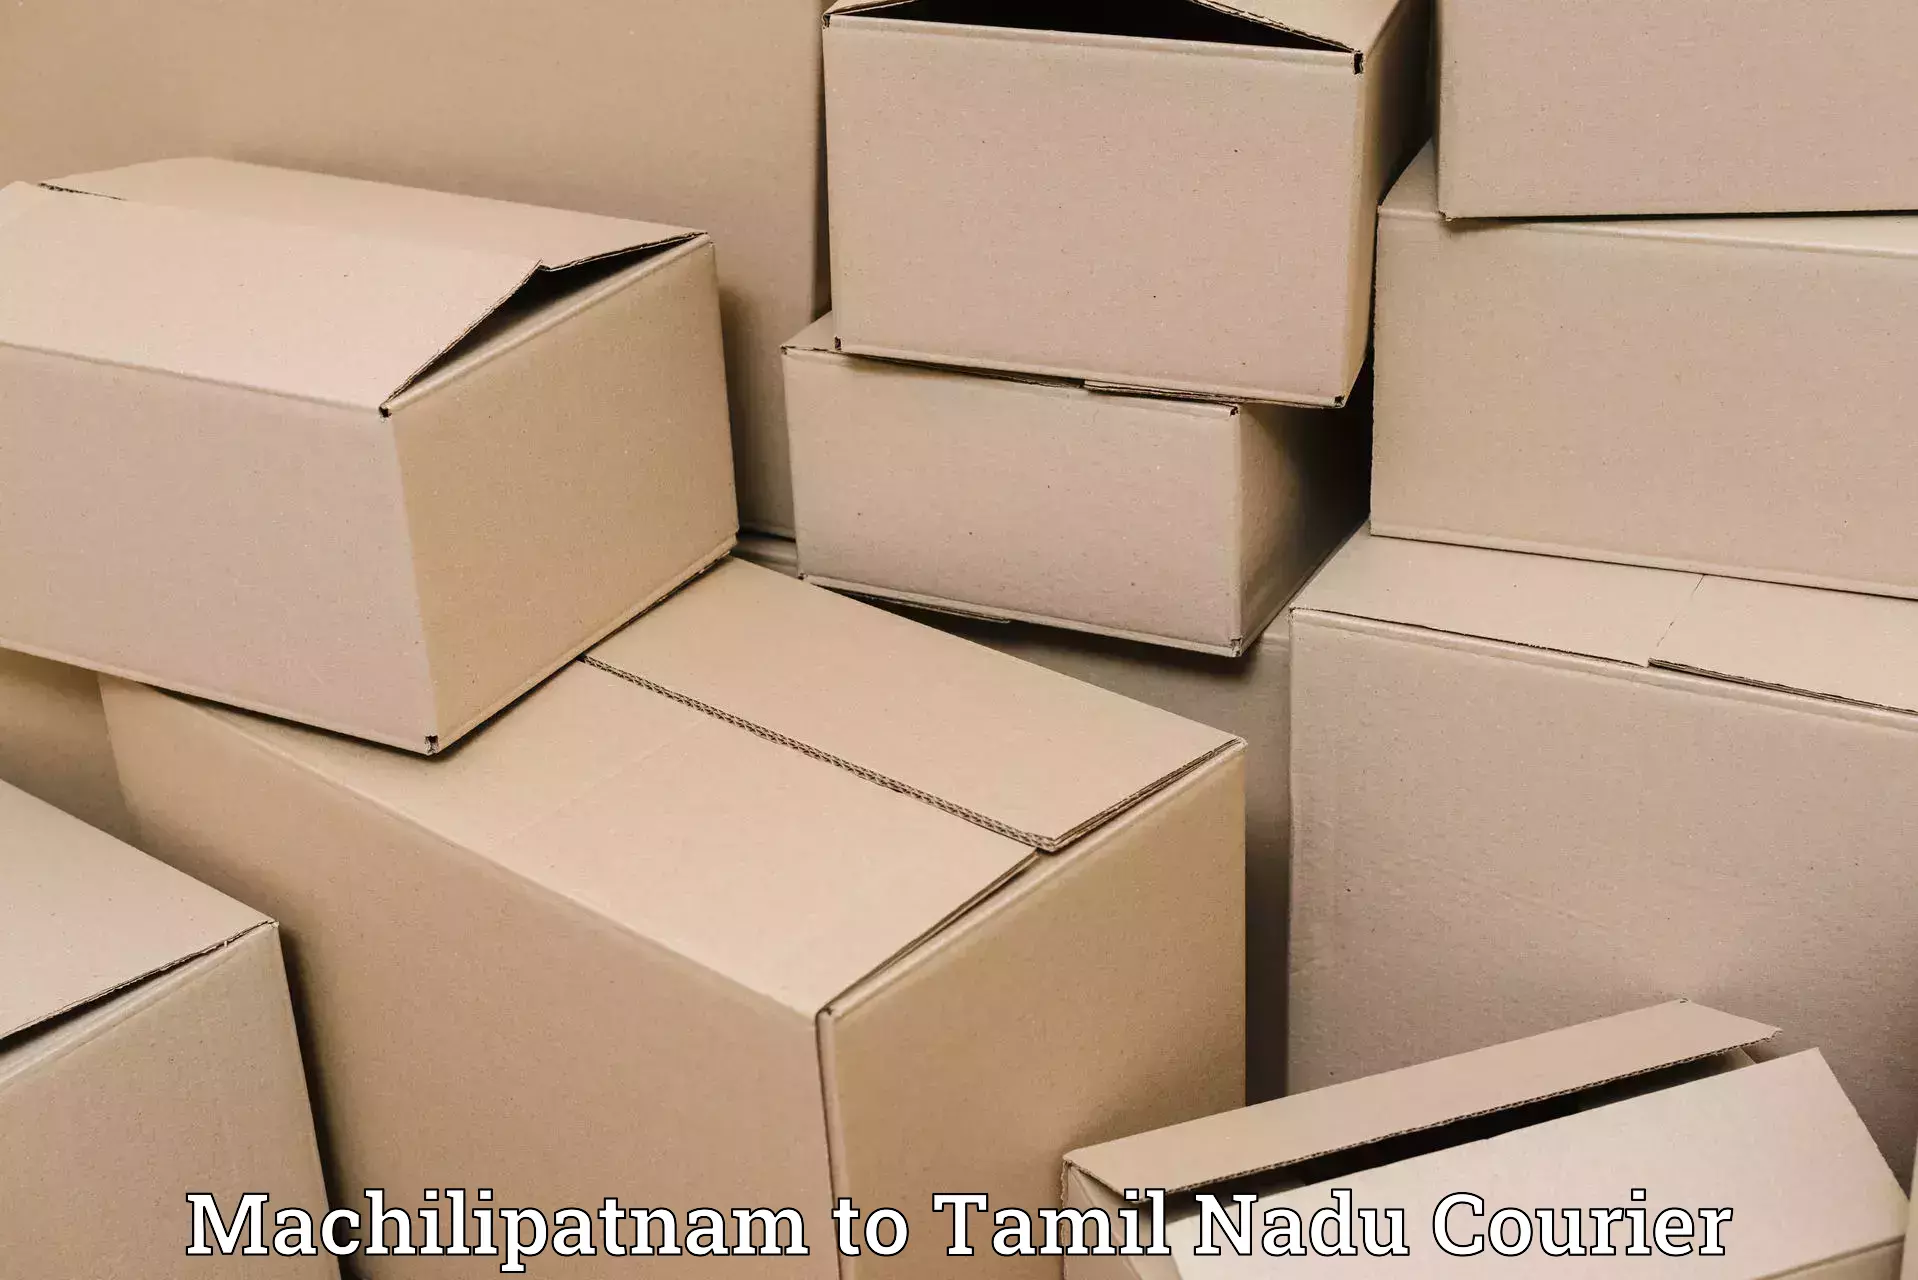 Courier services Machilipatnam to Tamil Nadu